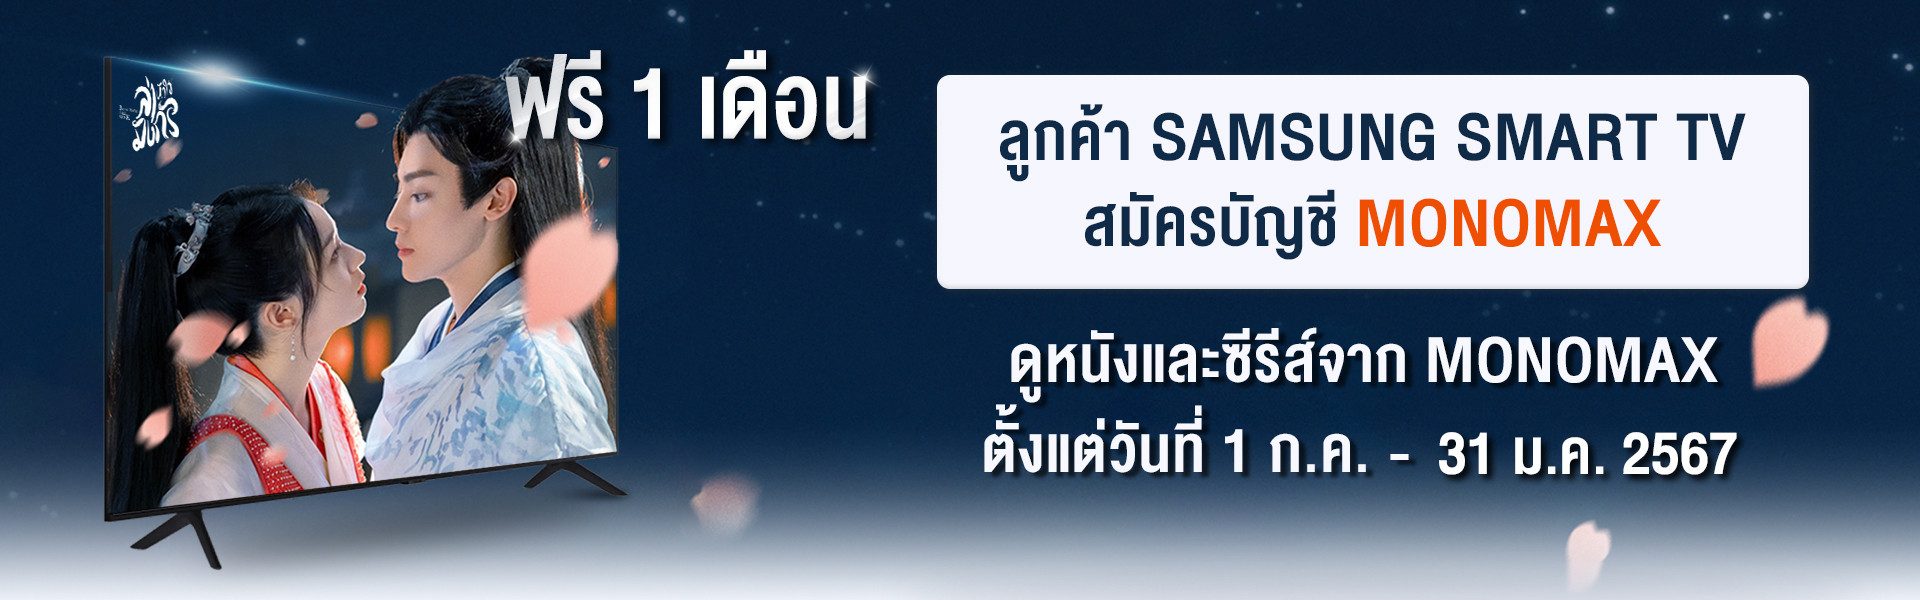 โปรโมชันสำหรับลูกค้า SAMSUNG TV